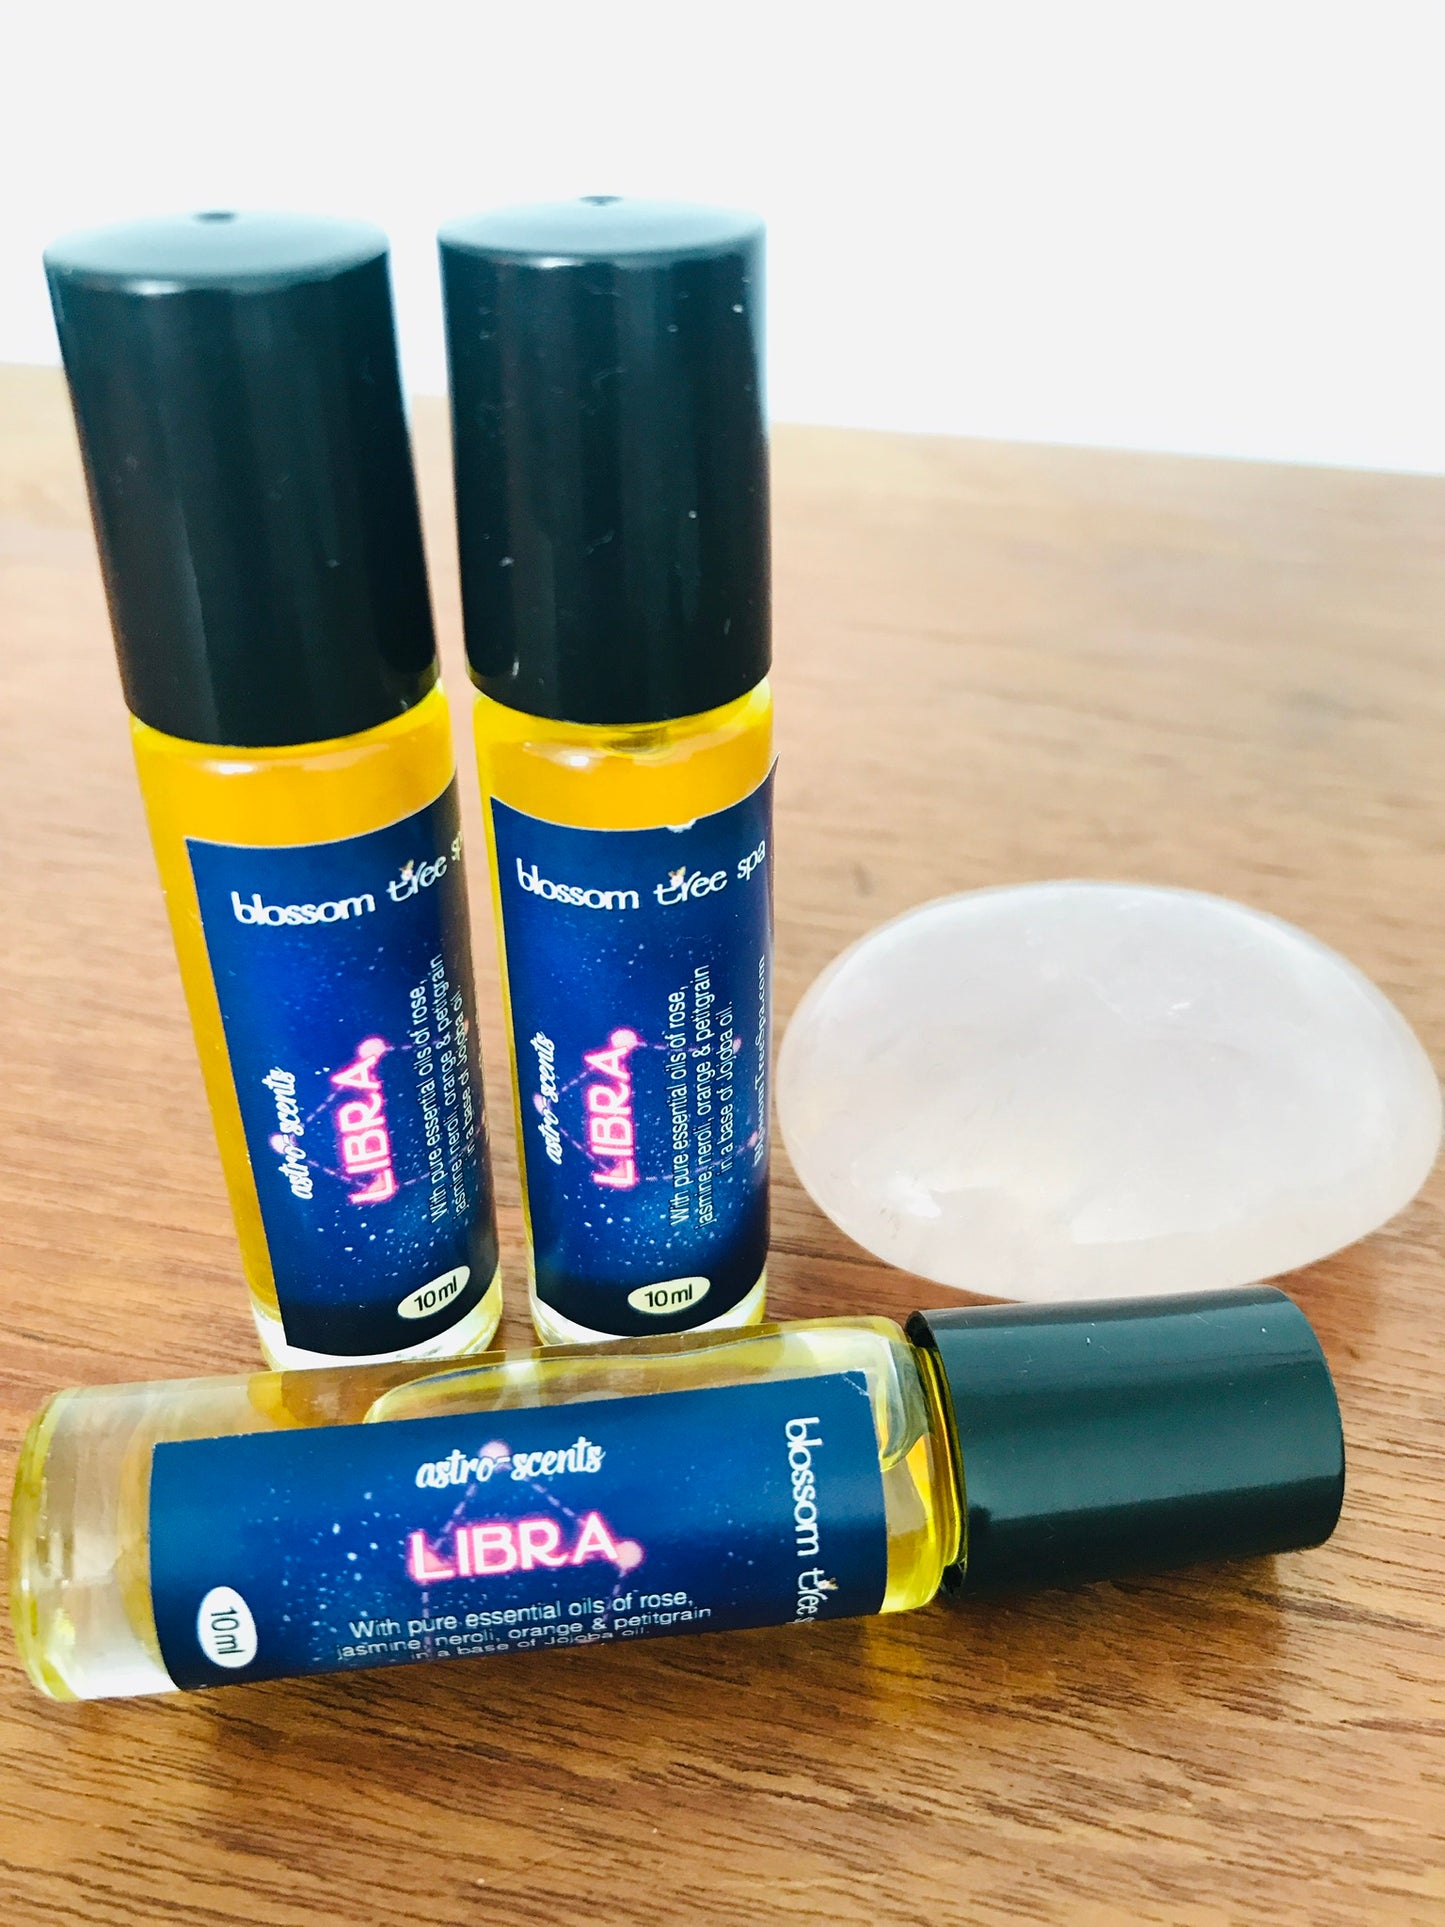 Libra Astro-scent roller ball